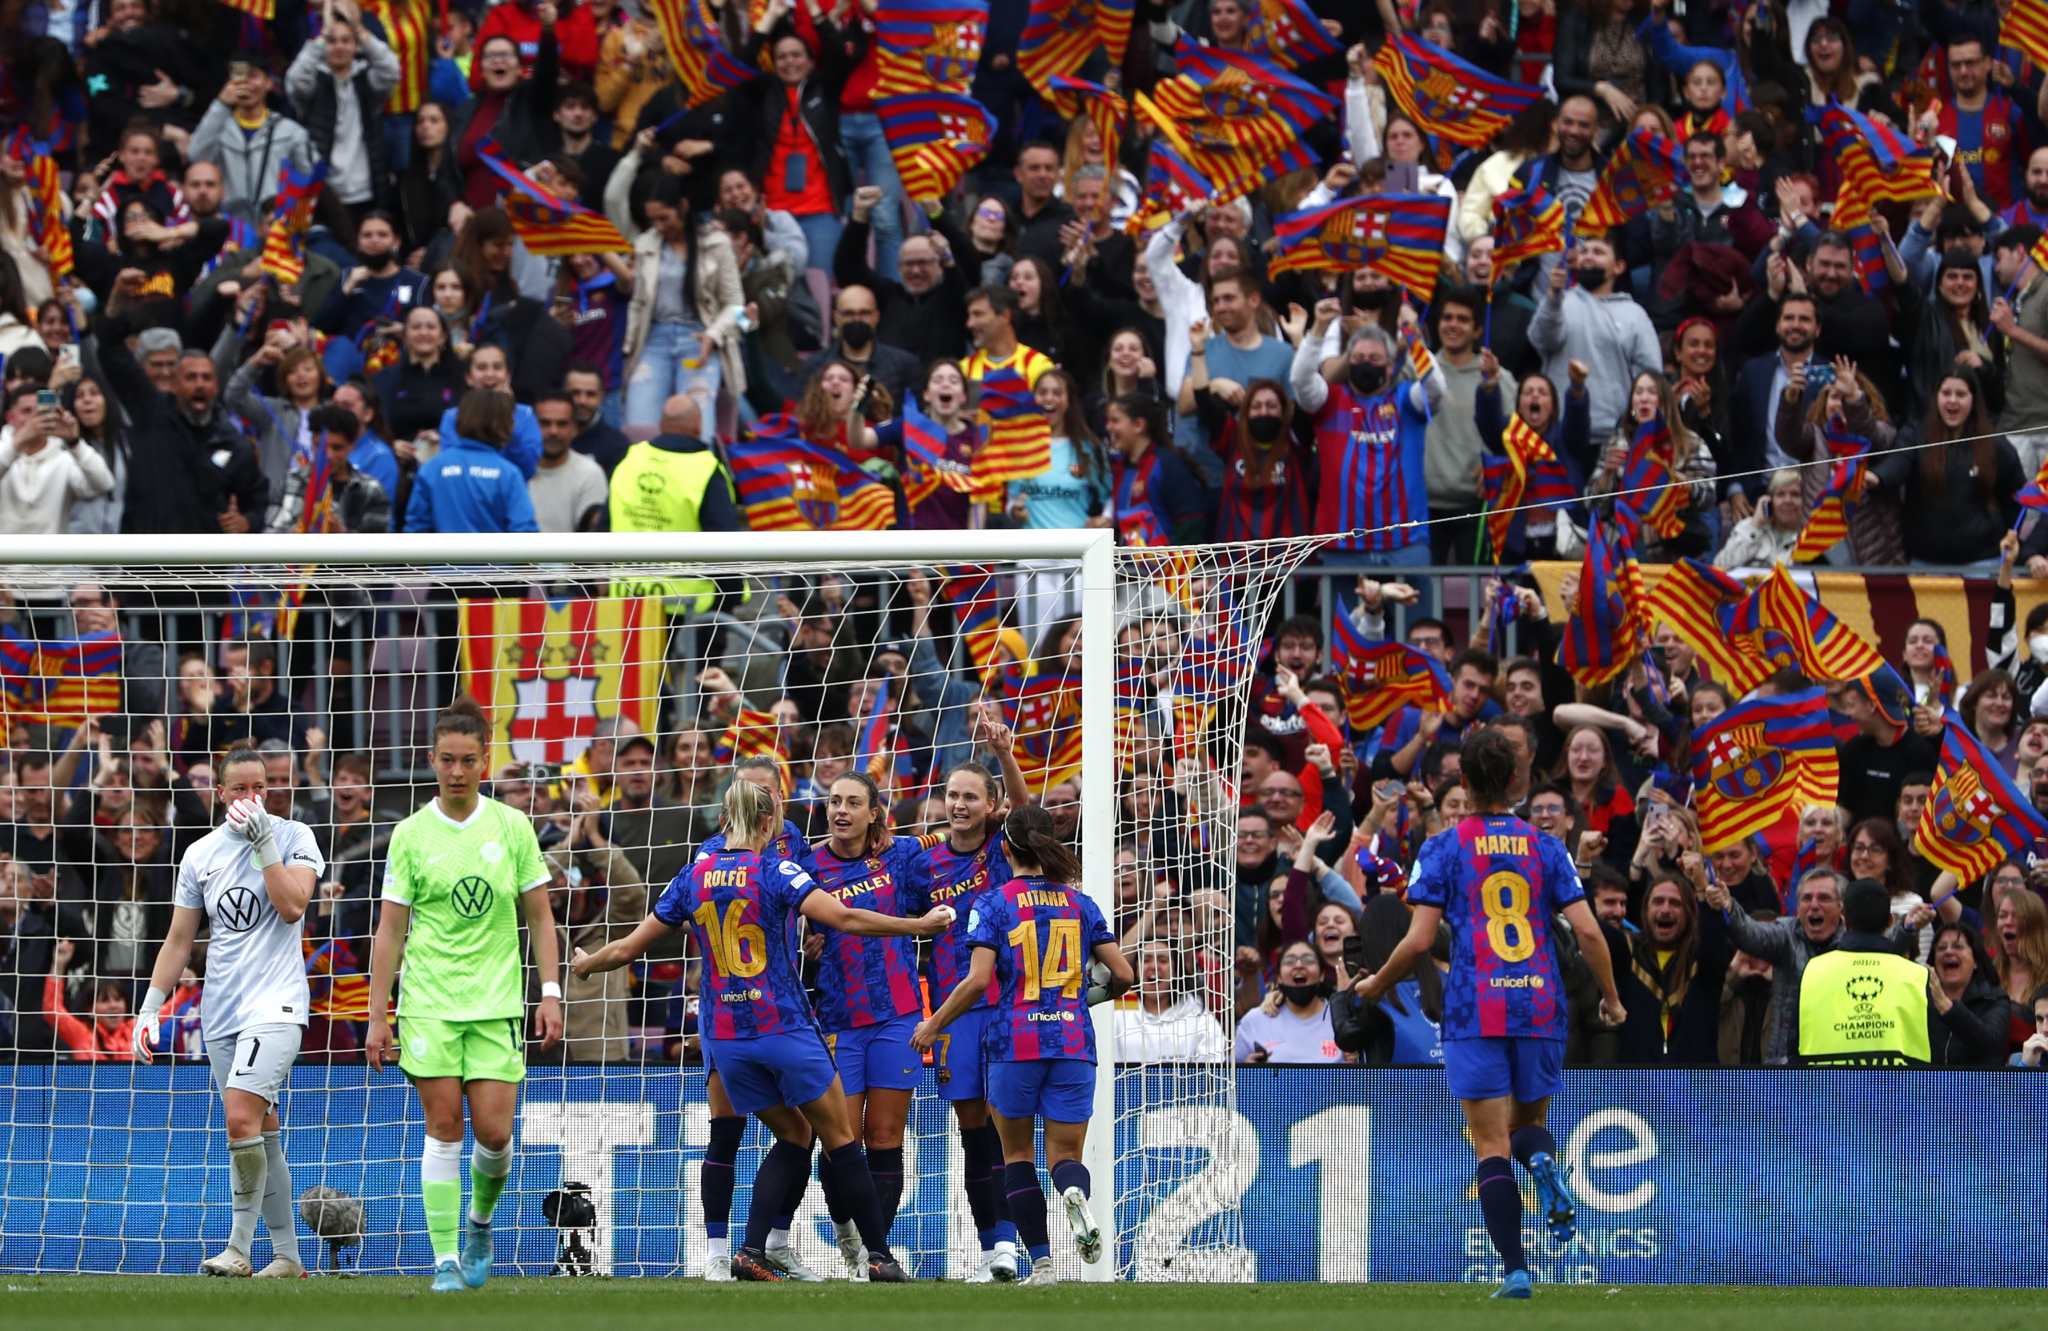 (PONOVO) PAO SVETSKI REKORD Fudbalerke Barselone gledalo više od 90.000 ljudi, one petardom najavile finale Lige šampiona (FOTO)